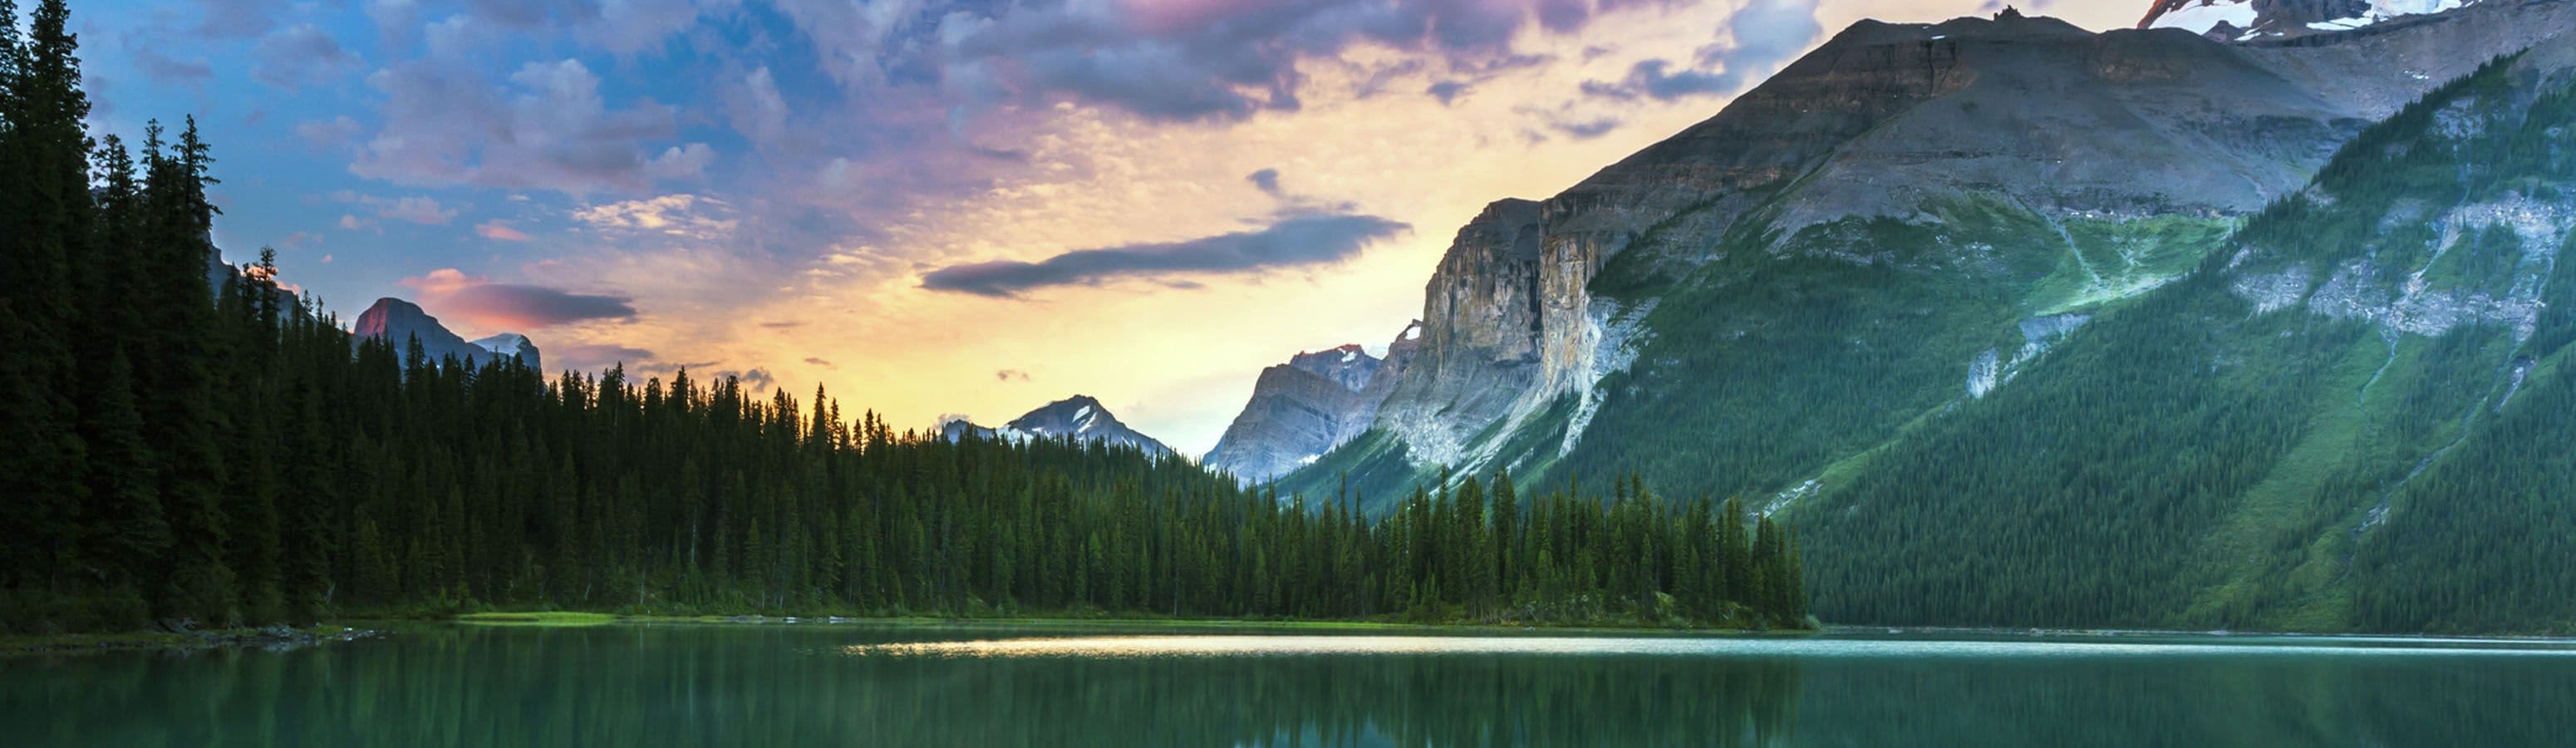 Il Canada offre accesso gratuito ai parchi nazionali